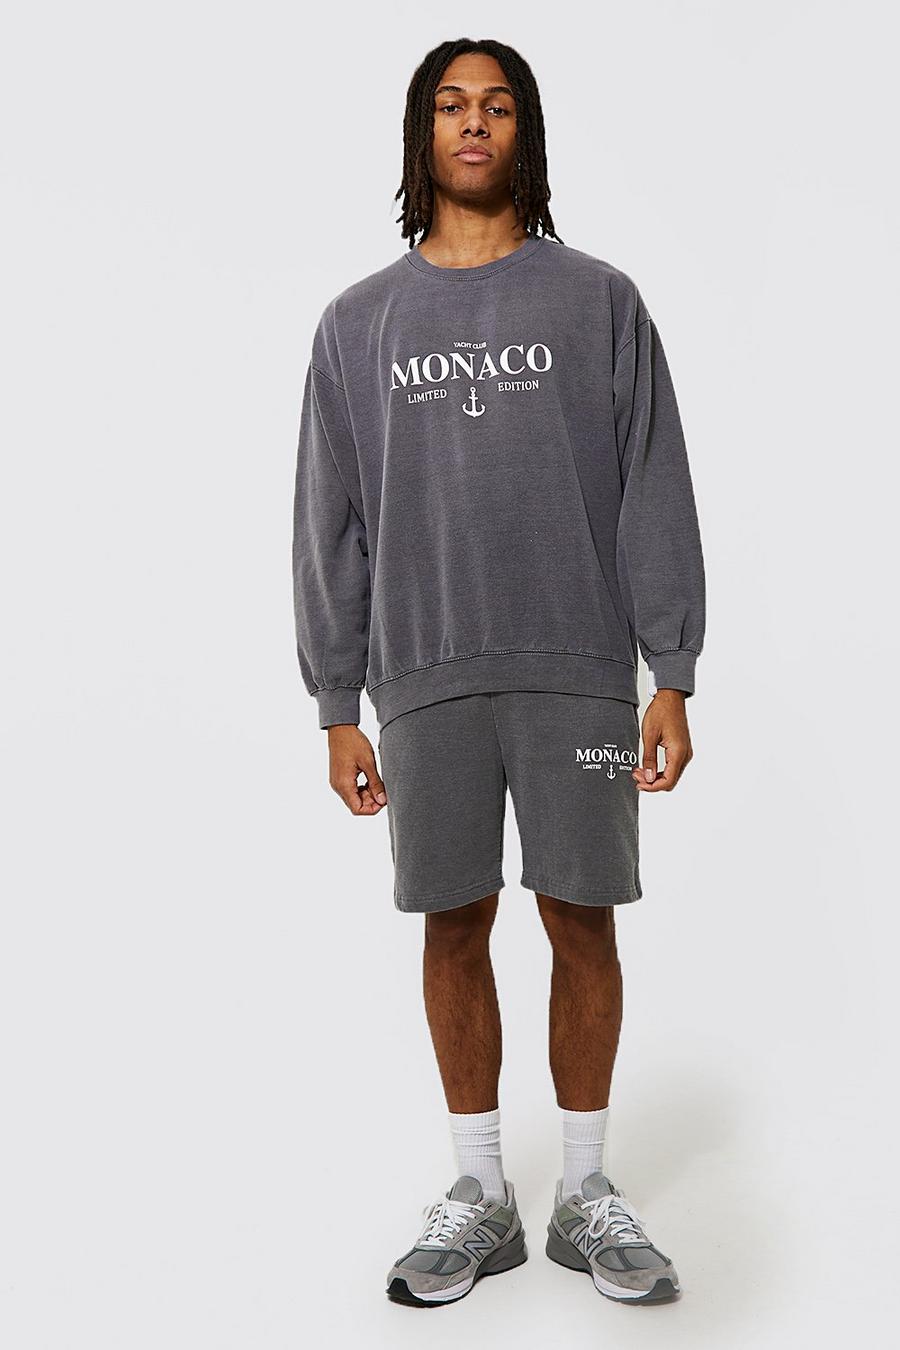 Charcoal grey Oversized Monaco Sweatshirt Short Tracksuit